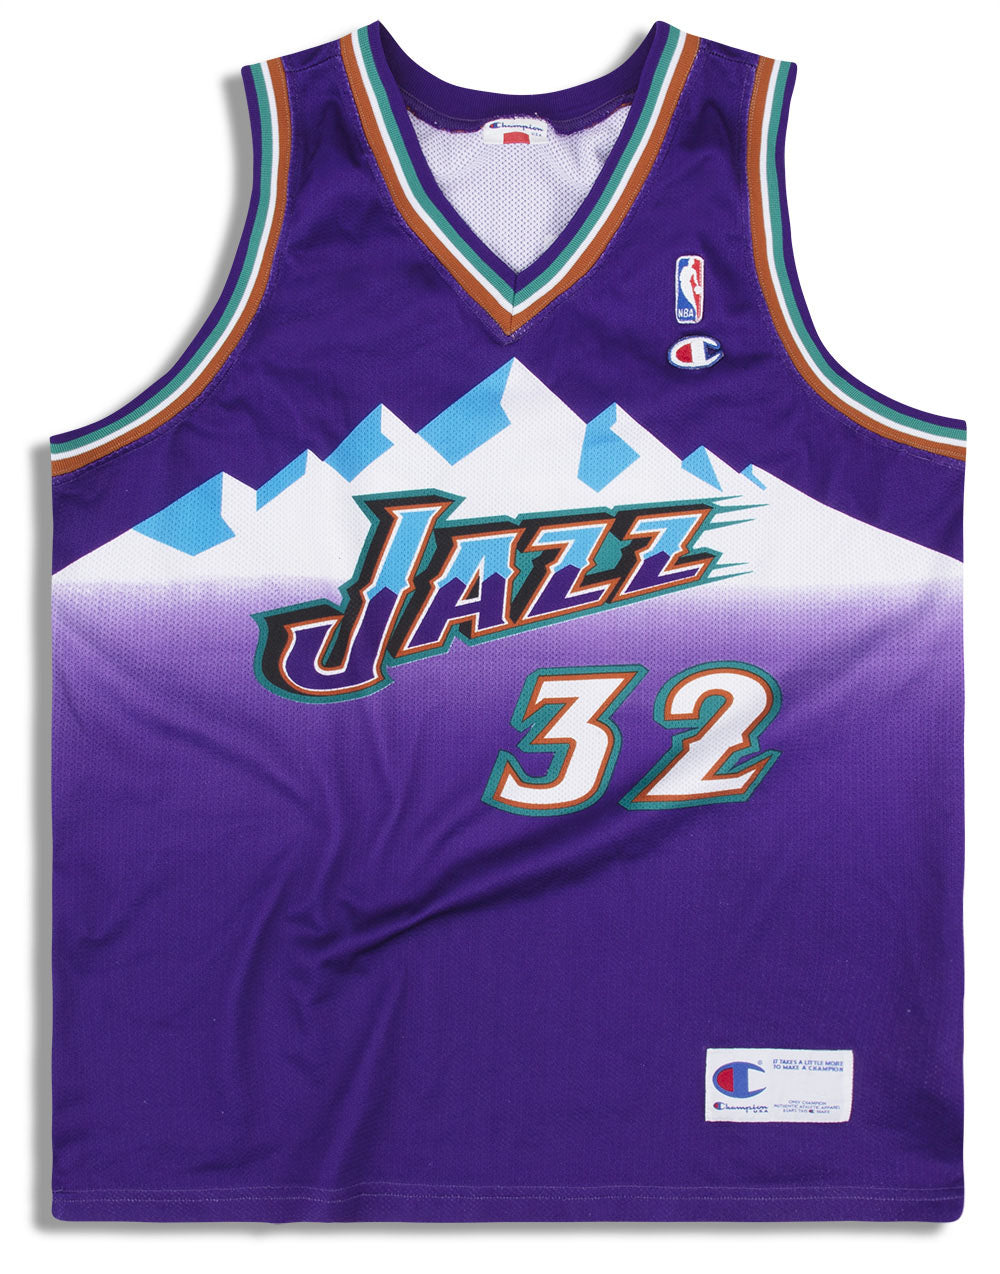 Buy Vintage Utah Jazz 00 Sanders NBA Baskerball Reebok Jersey